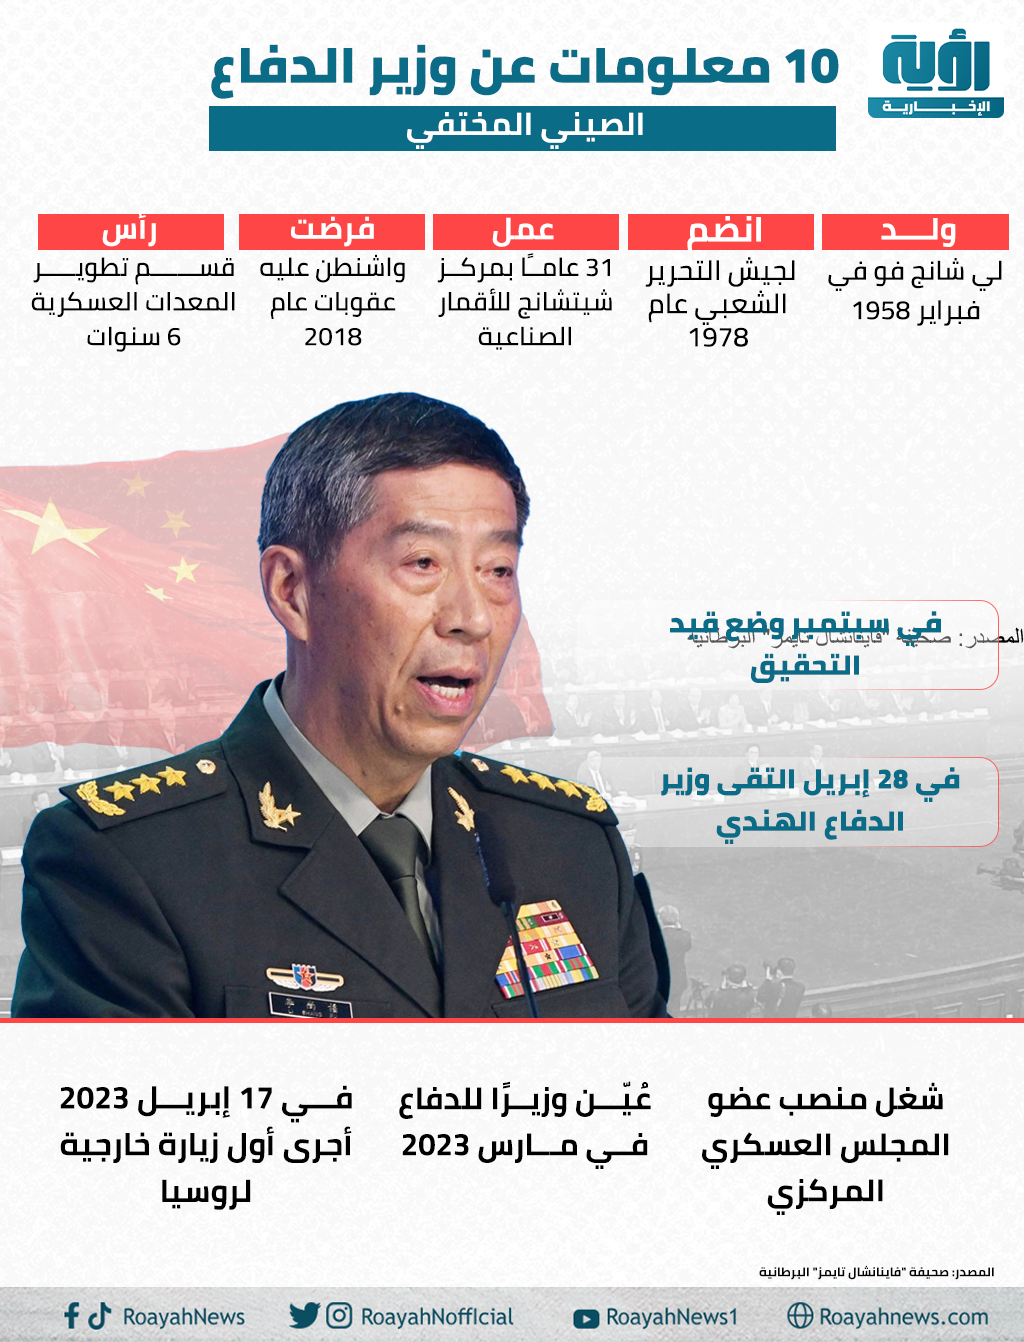 10 معلومات عن وزير الدفاع الصيني